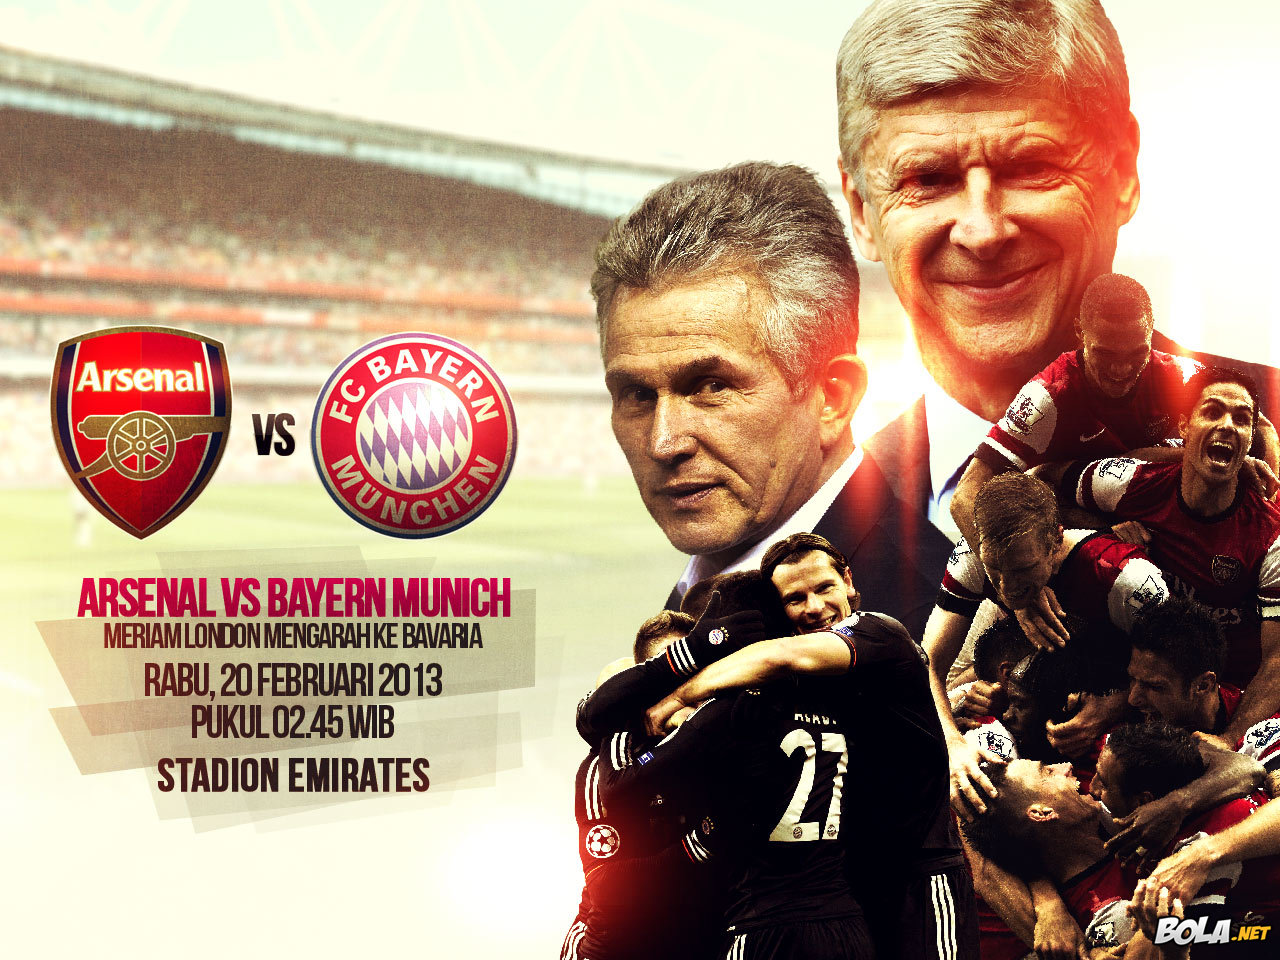 Deskripsi : Wallpaper Arsenal Vs Bayern Munich, size: 1280x960